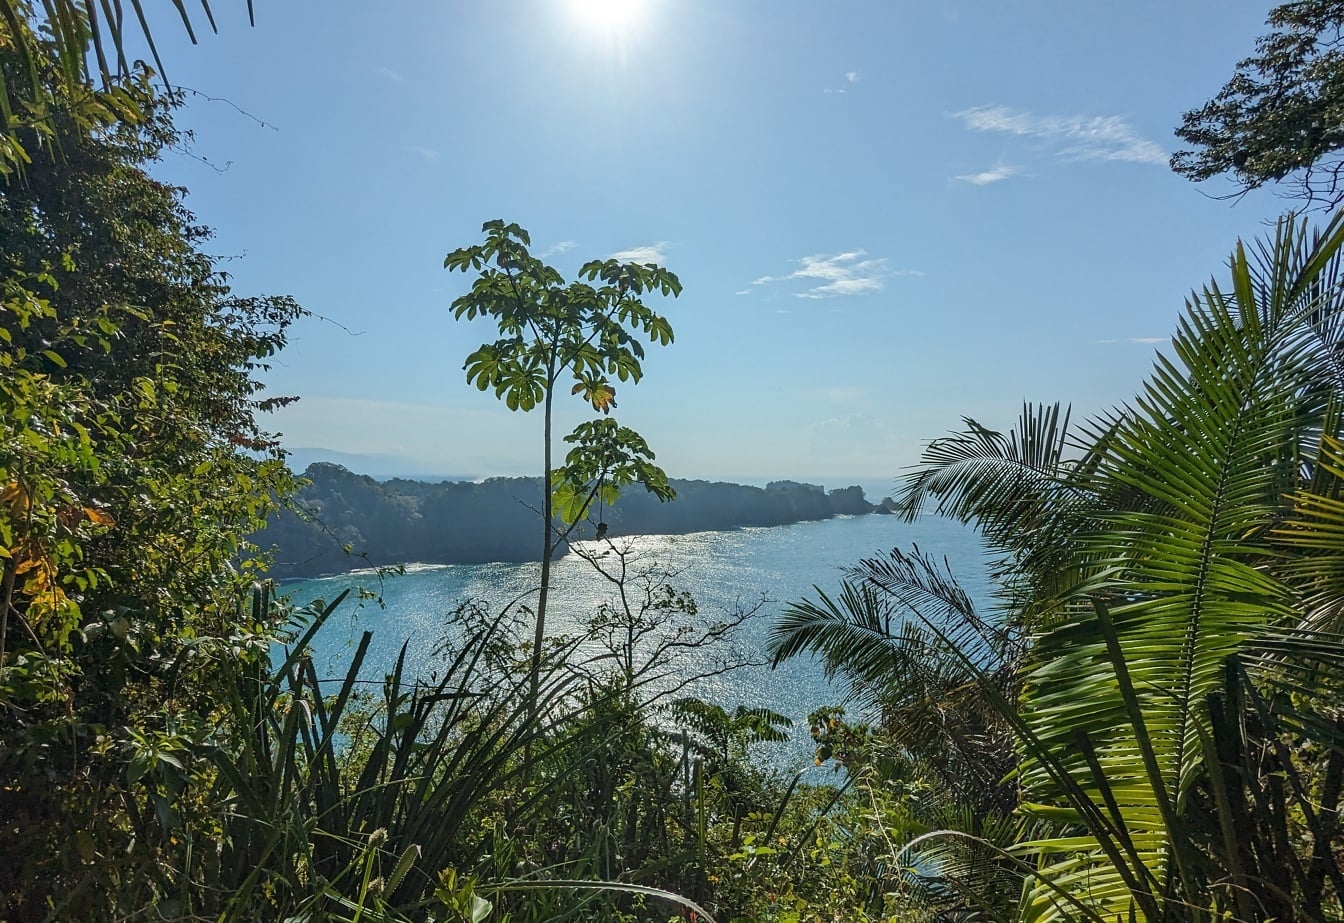 Tropikal ağaçlar ve bitkilerle dolu bir tepeden panoramik lagün manzarası